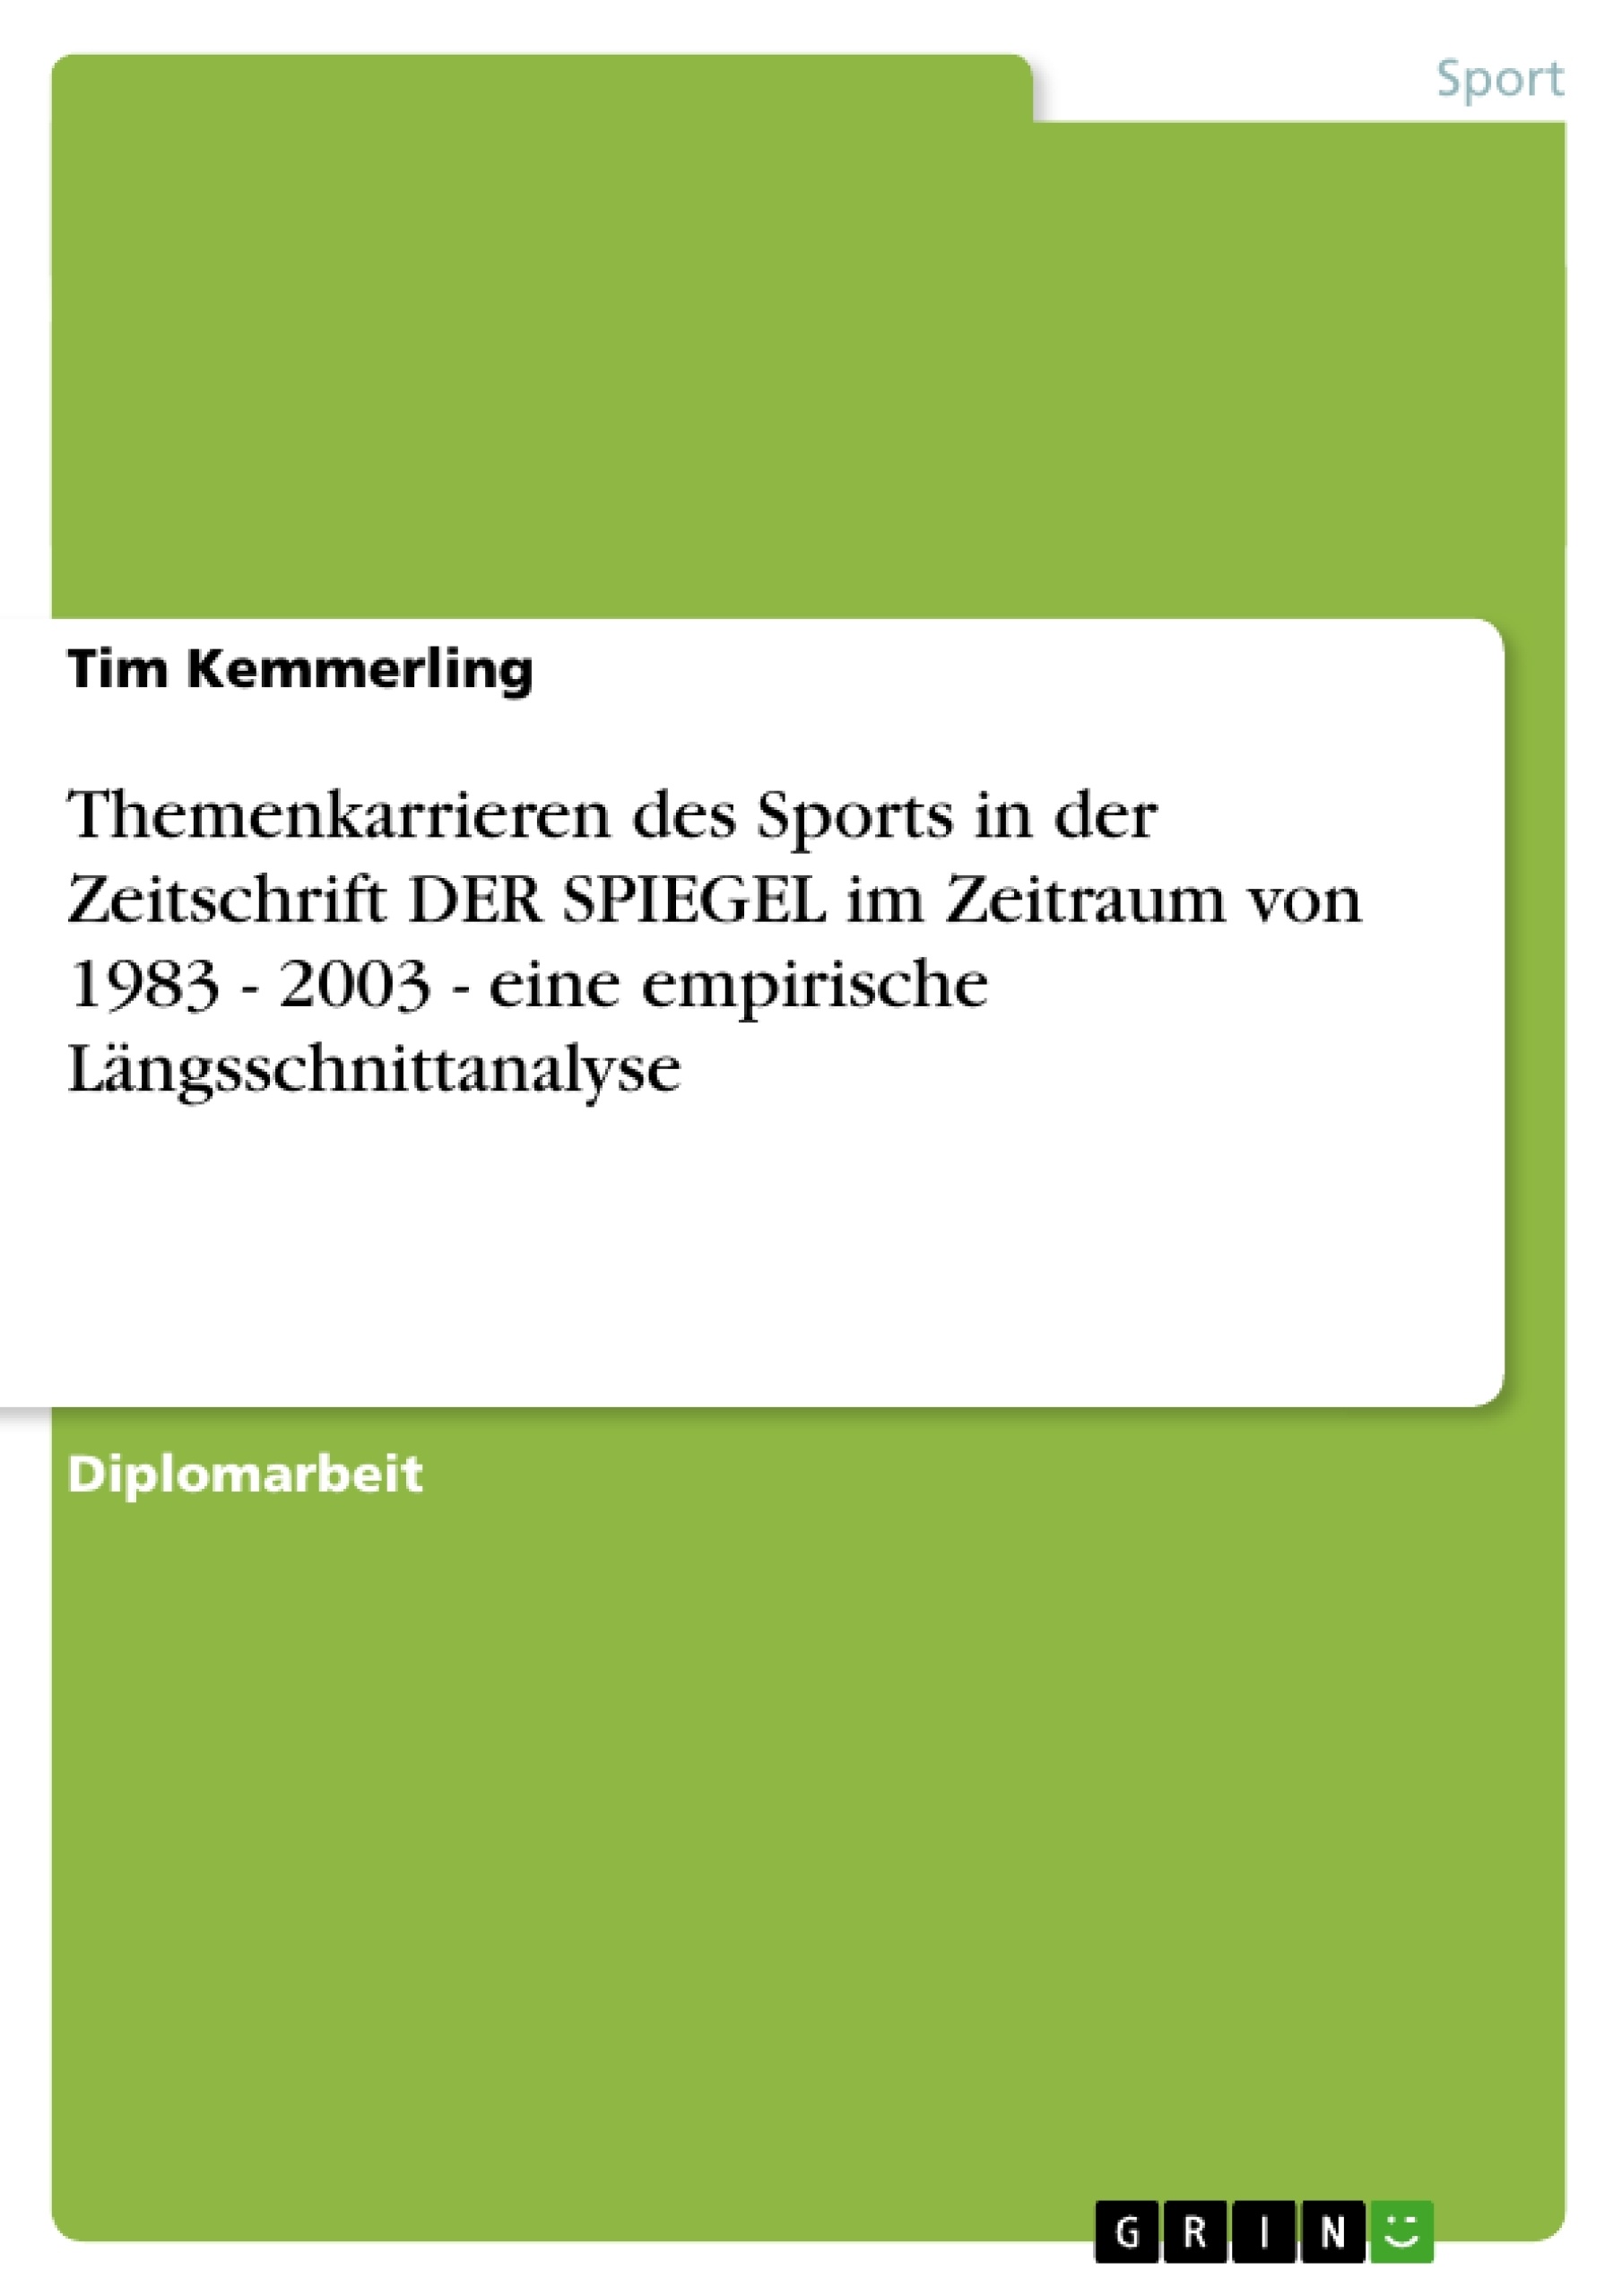 Título: Themenkarrieren des Sports in der Zeitschrift DER SPIEGEL im Zeitraum von 1983 - 2003 - eine empirische Längsschnittanalyse